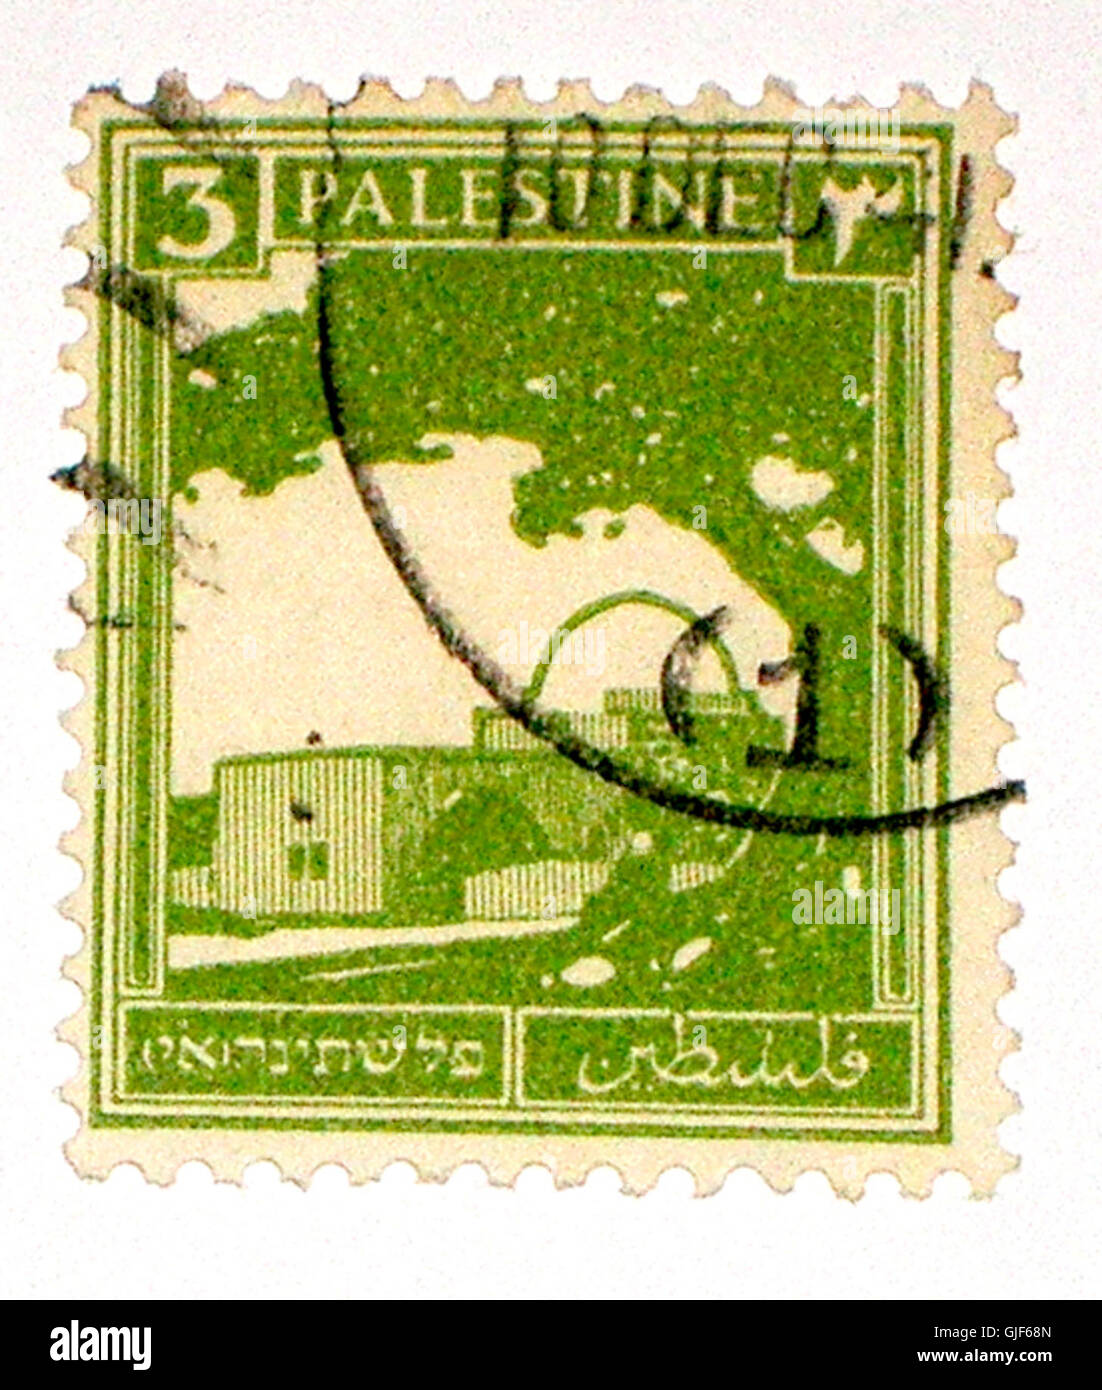 Palästina-Stempel Stockfoto